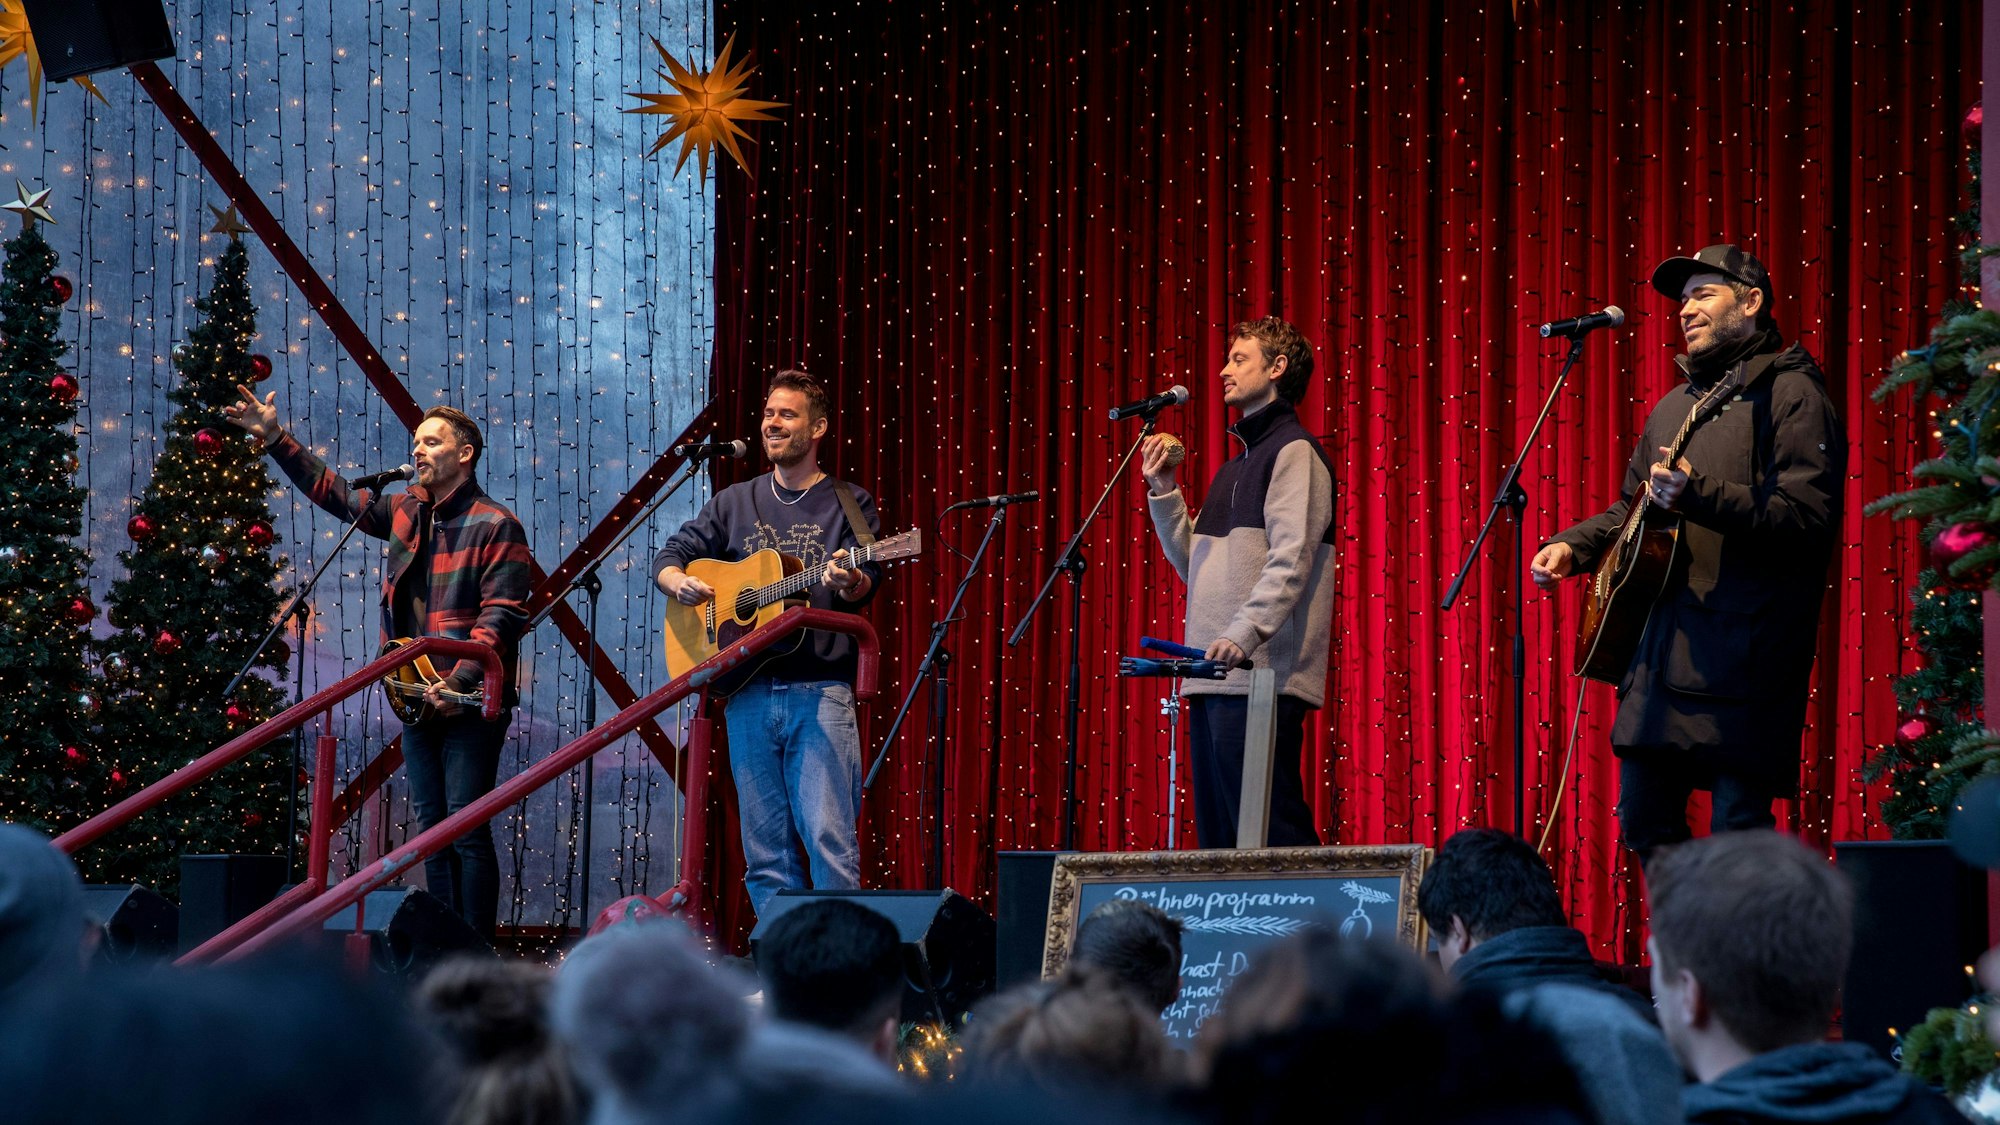 Livekonzert der Band Revolverheld auf dem Weihnachtsmarkt am Dom. Die vier Musiker an Mikros vor leuchtenden Lichterketten und rotem Vorhang.